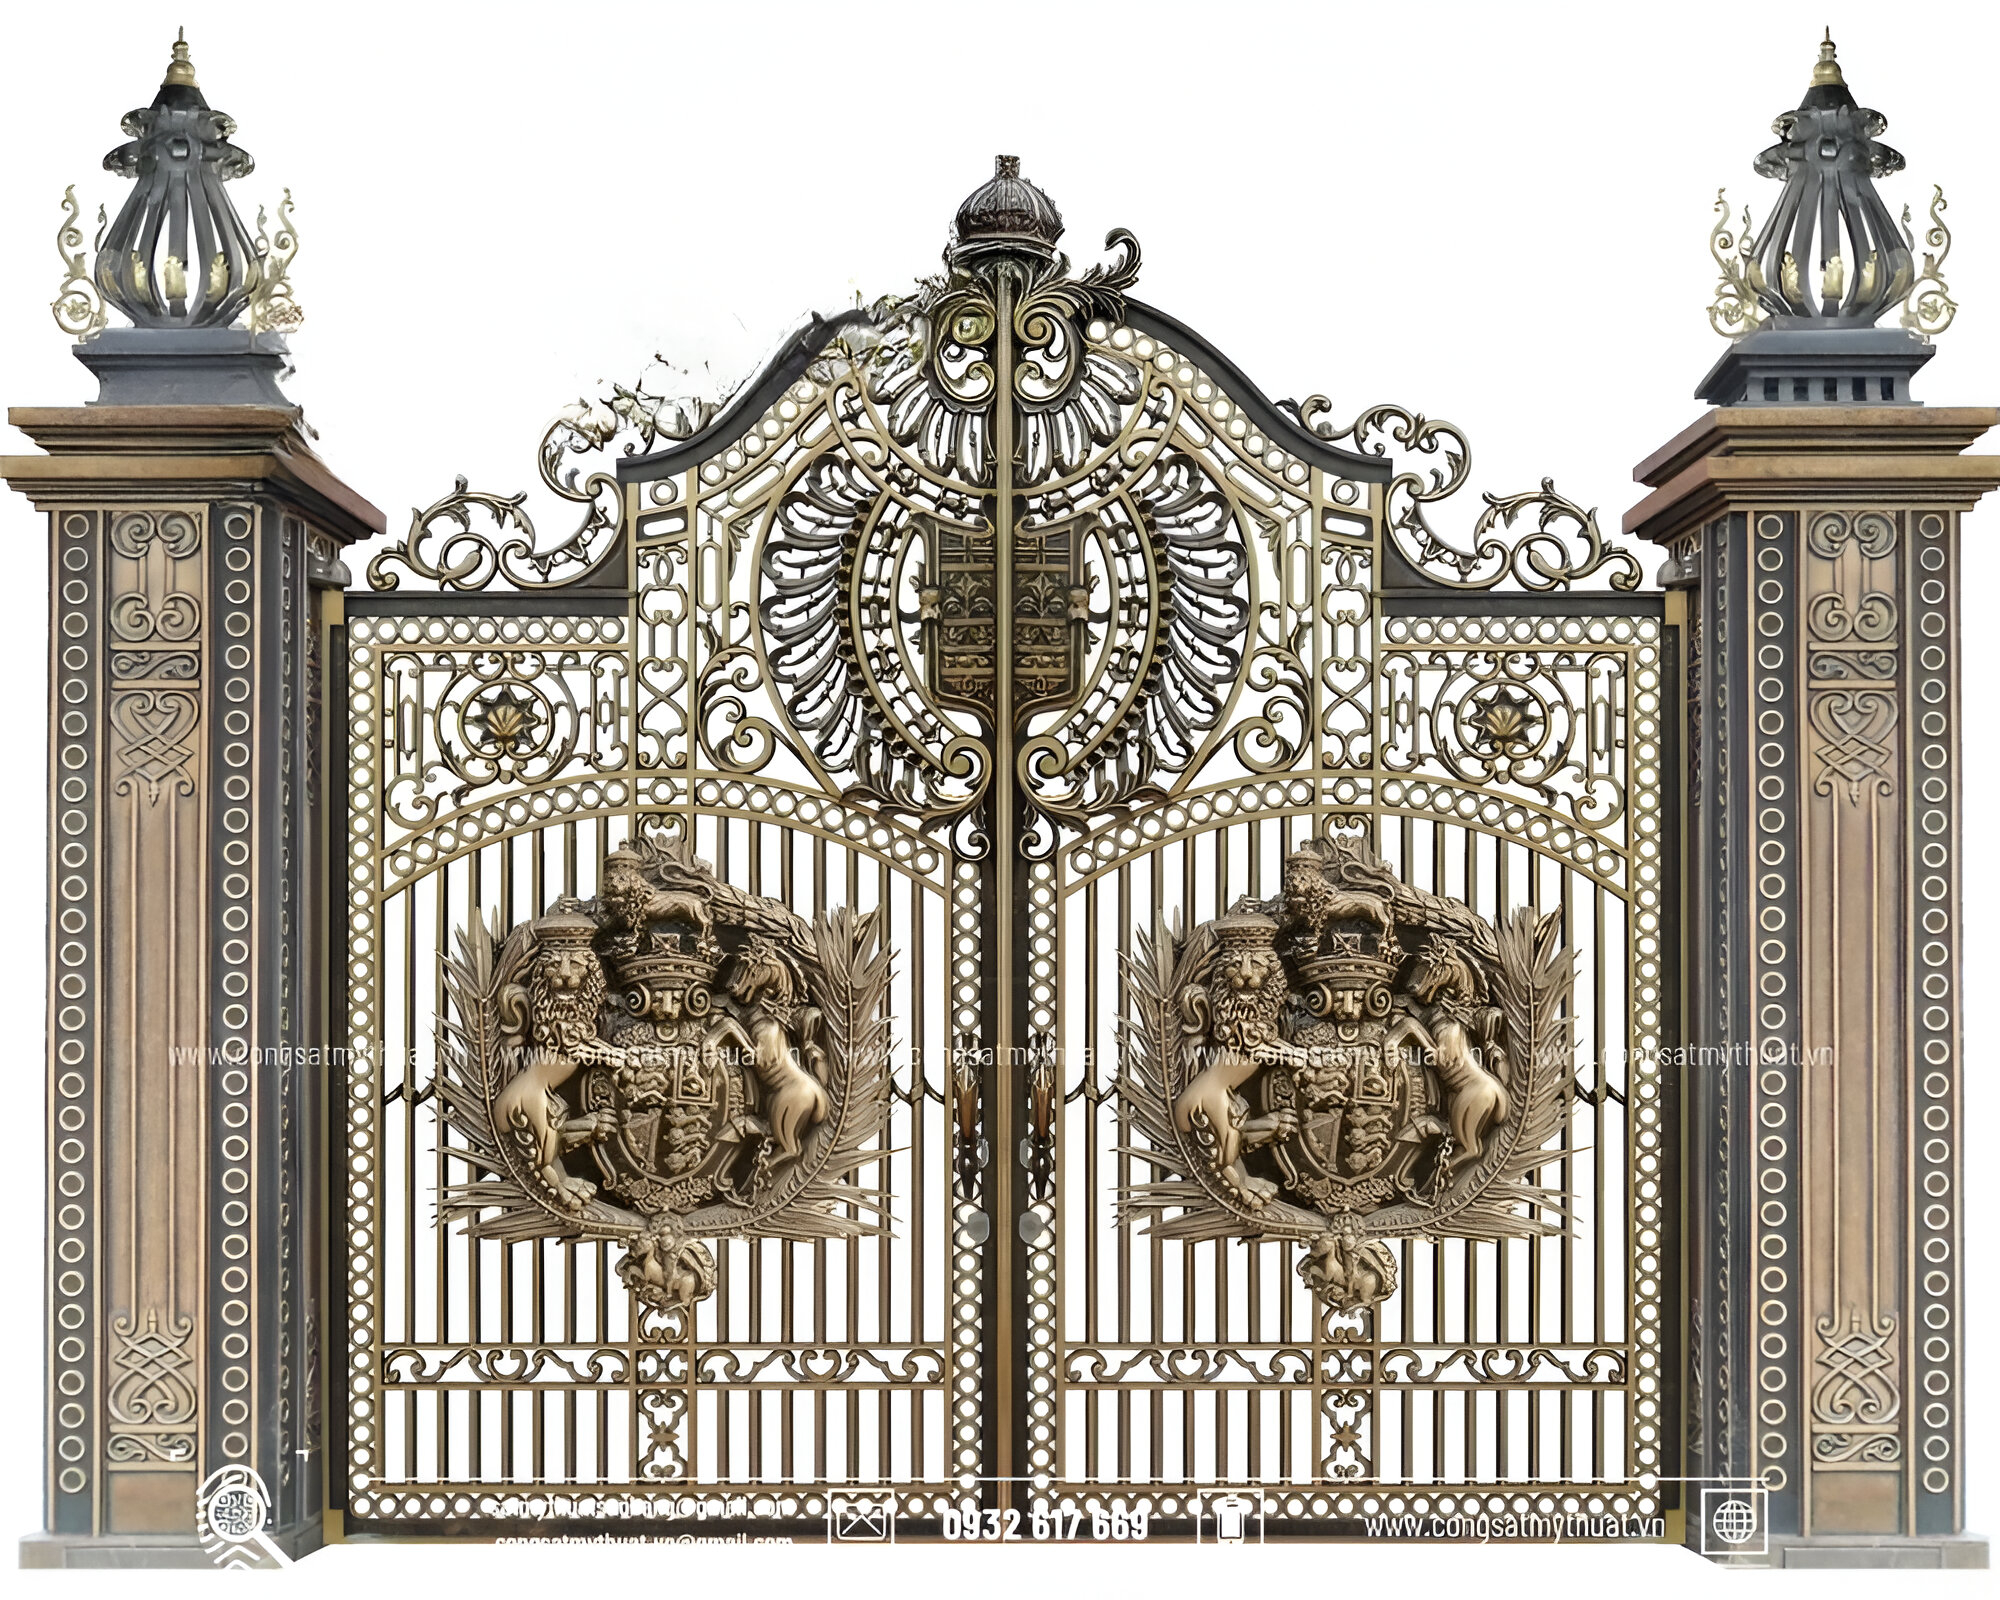 Thiết kế cổng tân cổ điển được trang trí lộng lẫy, vô cùng nổi bật.